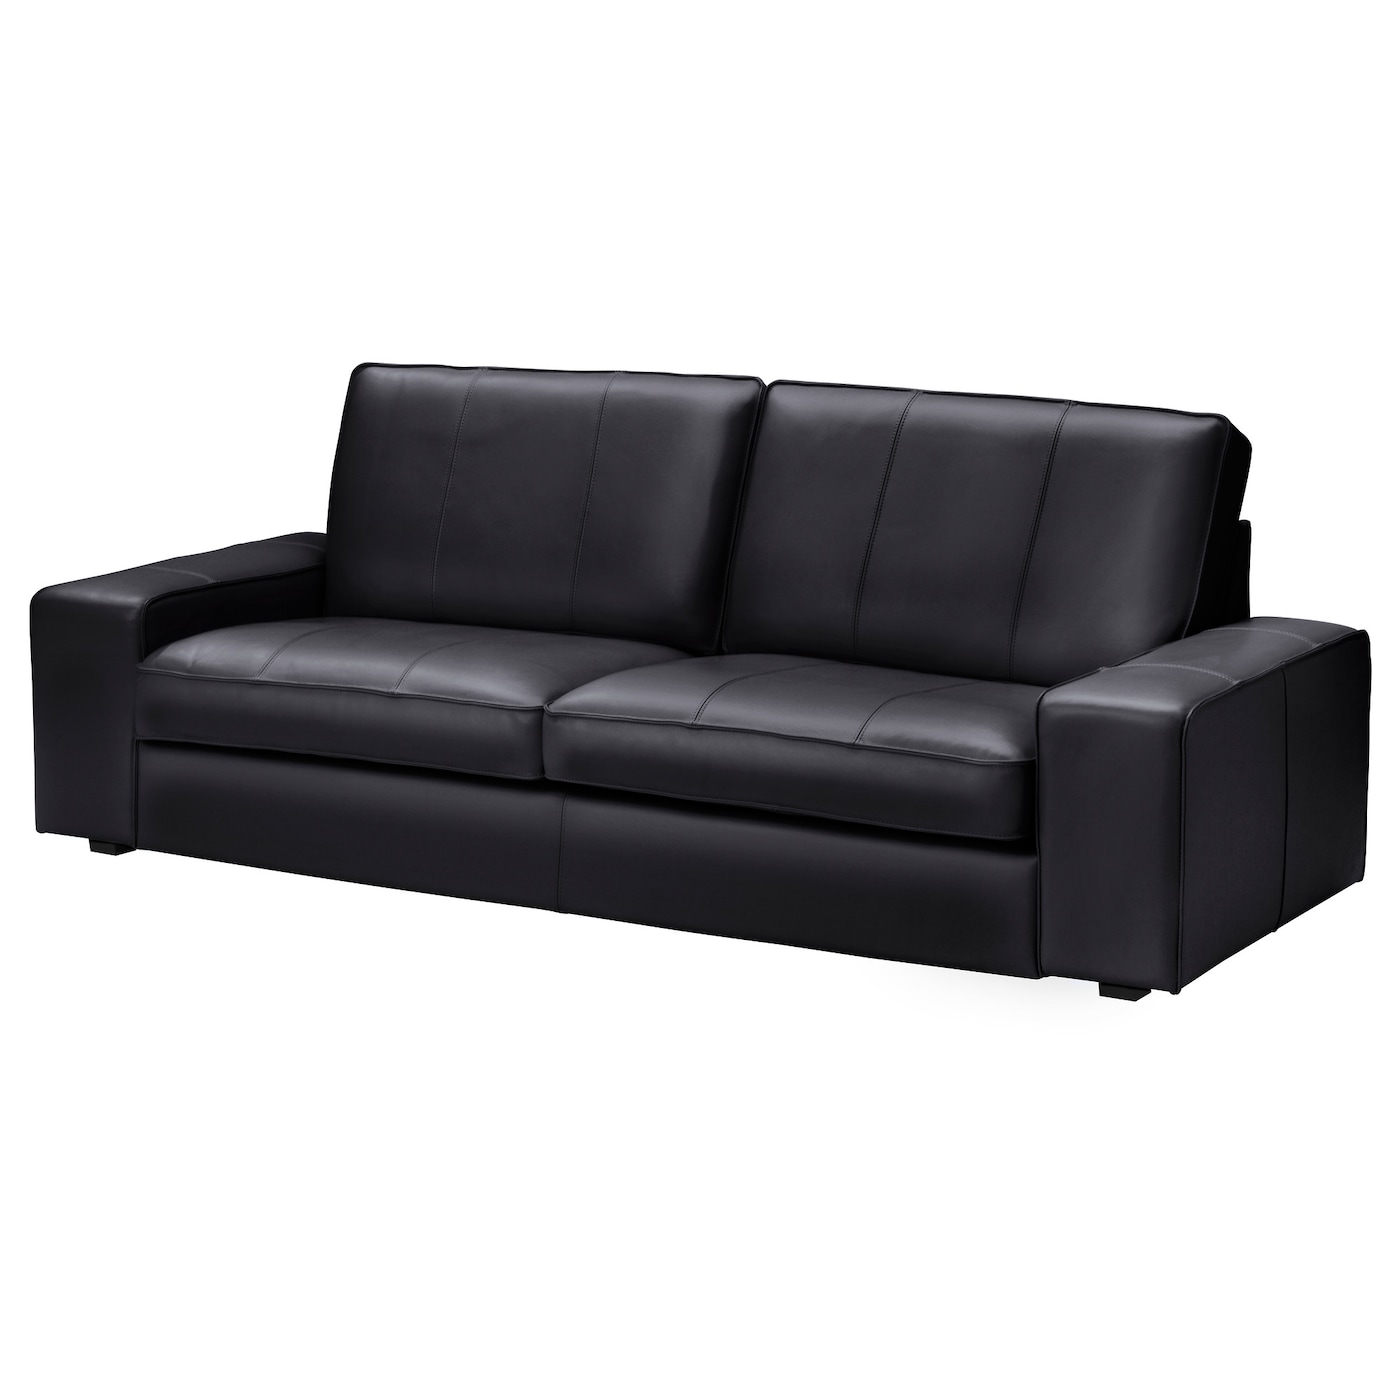 3-местный диван - IKEA KIVIK, 227х95х83 см, черный, кожа, КИВИК ИКЕА